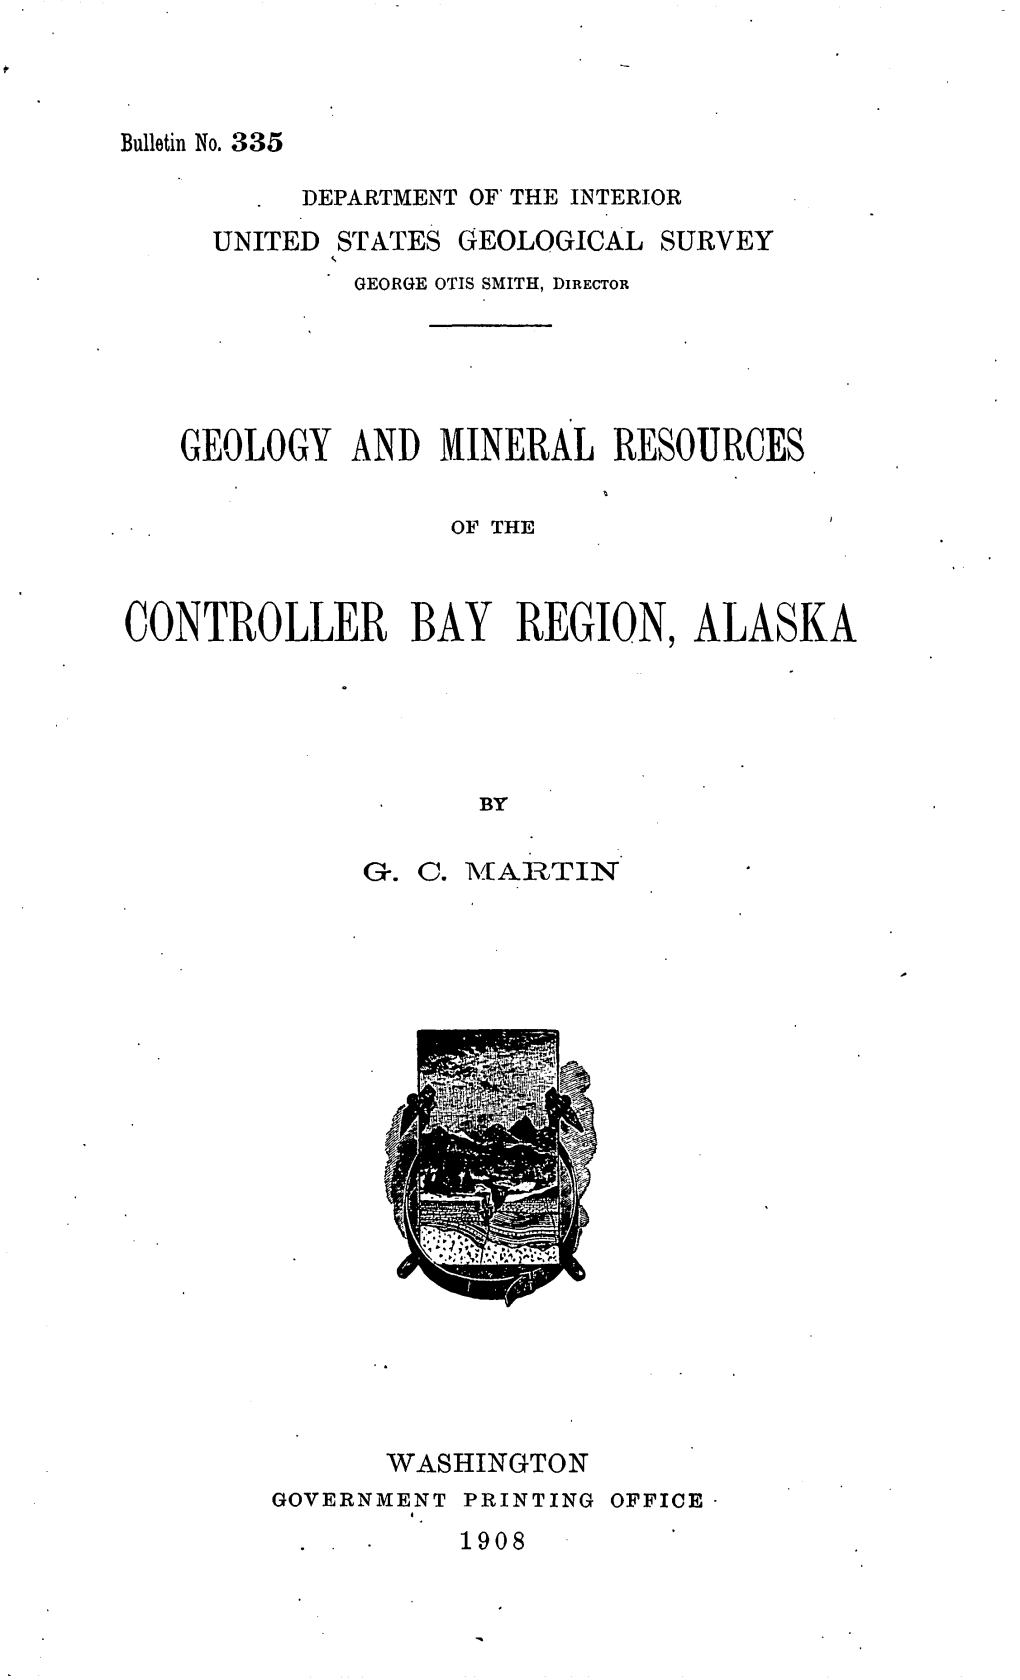 Controller Bay Region, Alaska